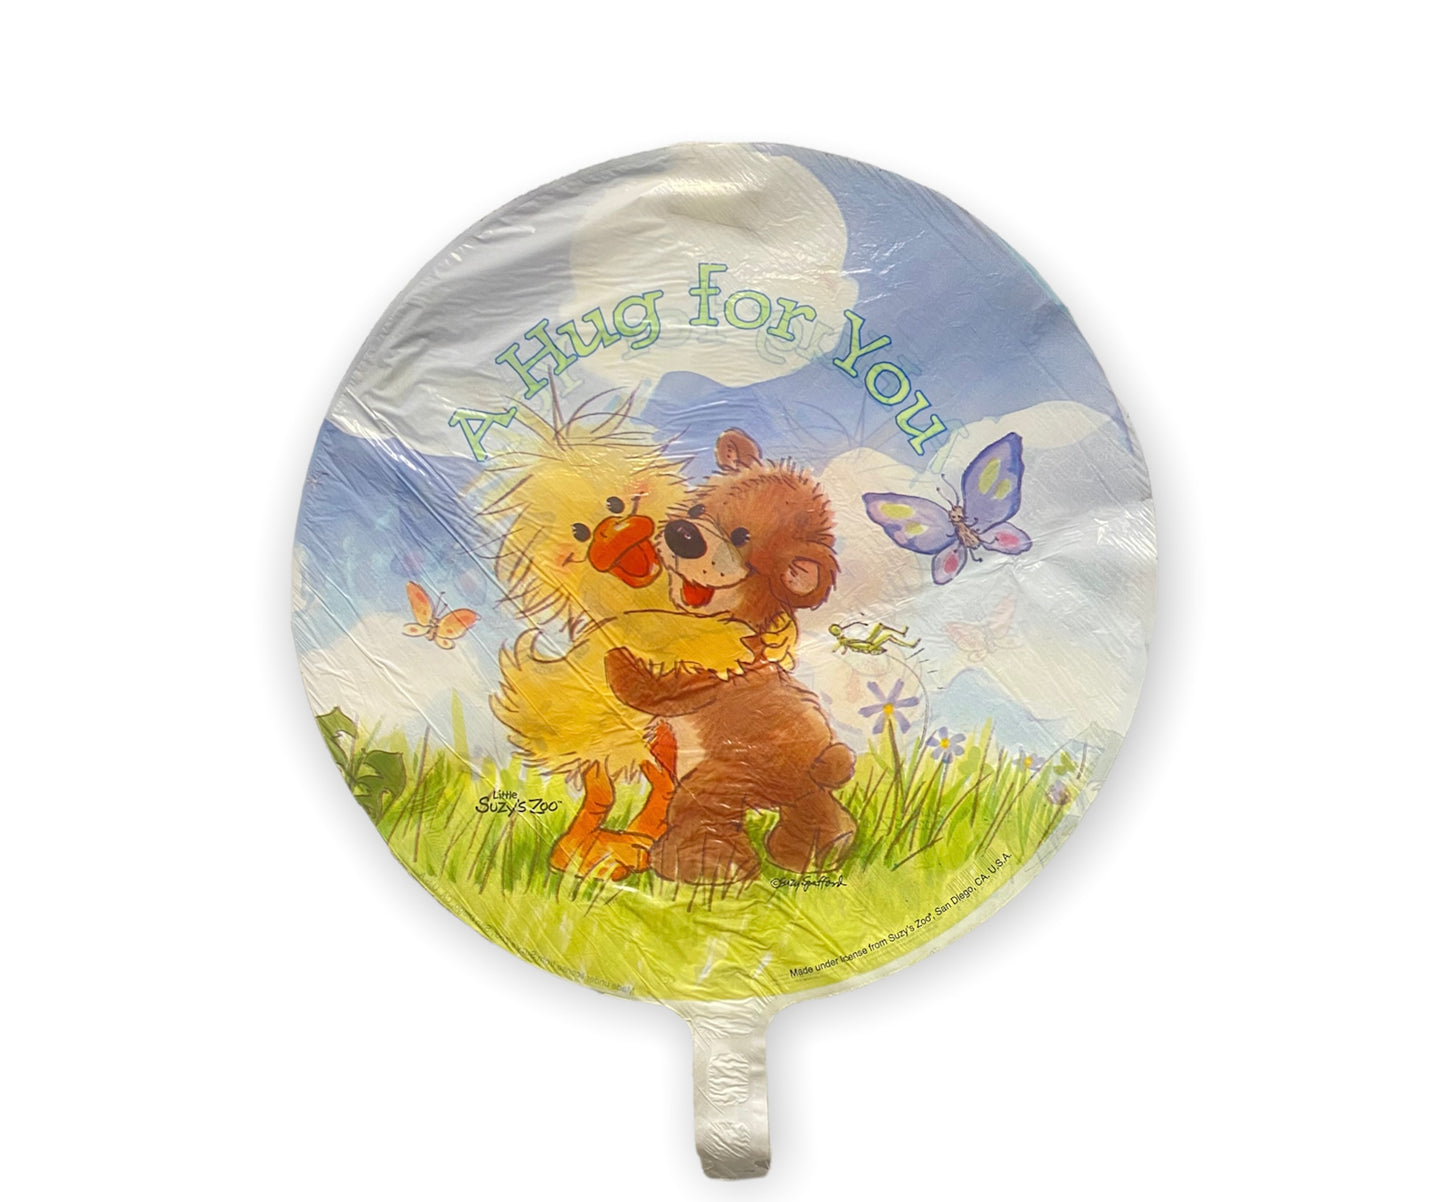 Barton 18" A Hug For You Little Suzy's Zoo Balloon